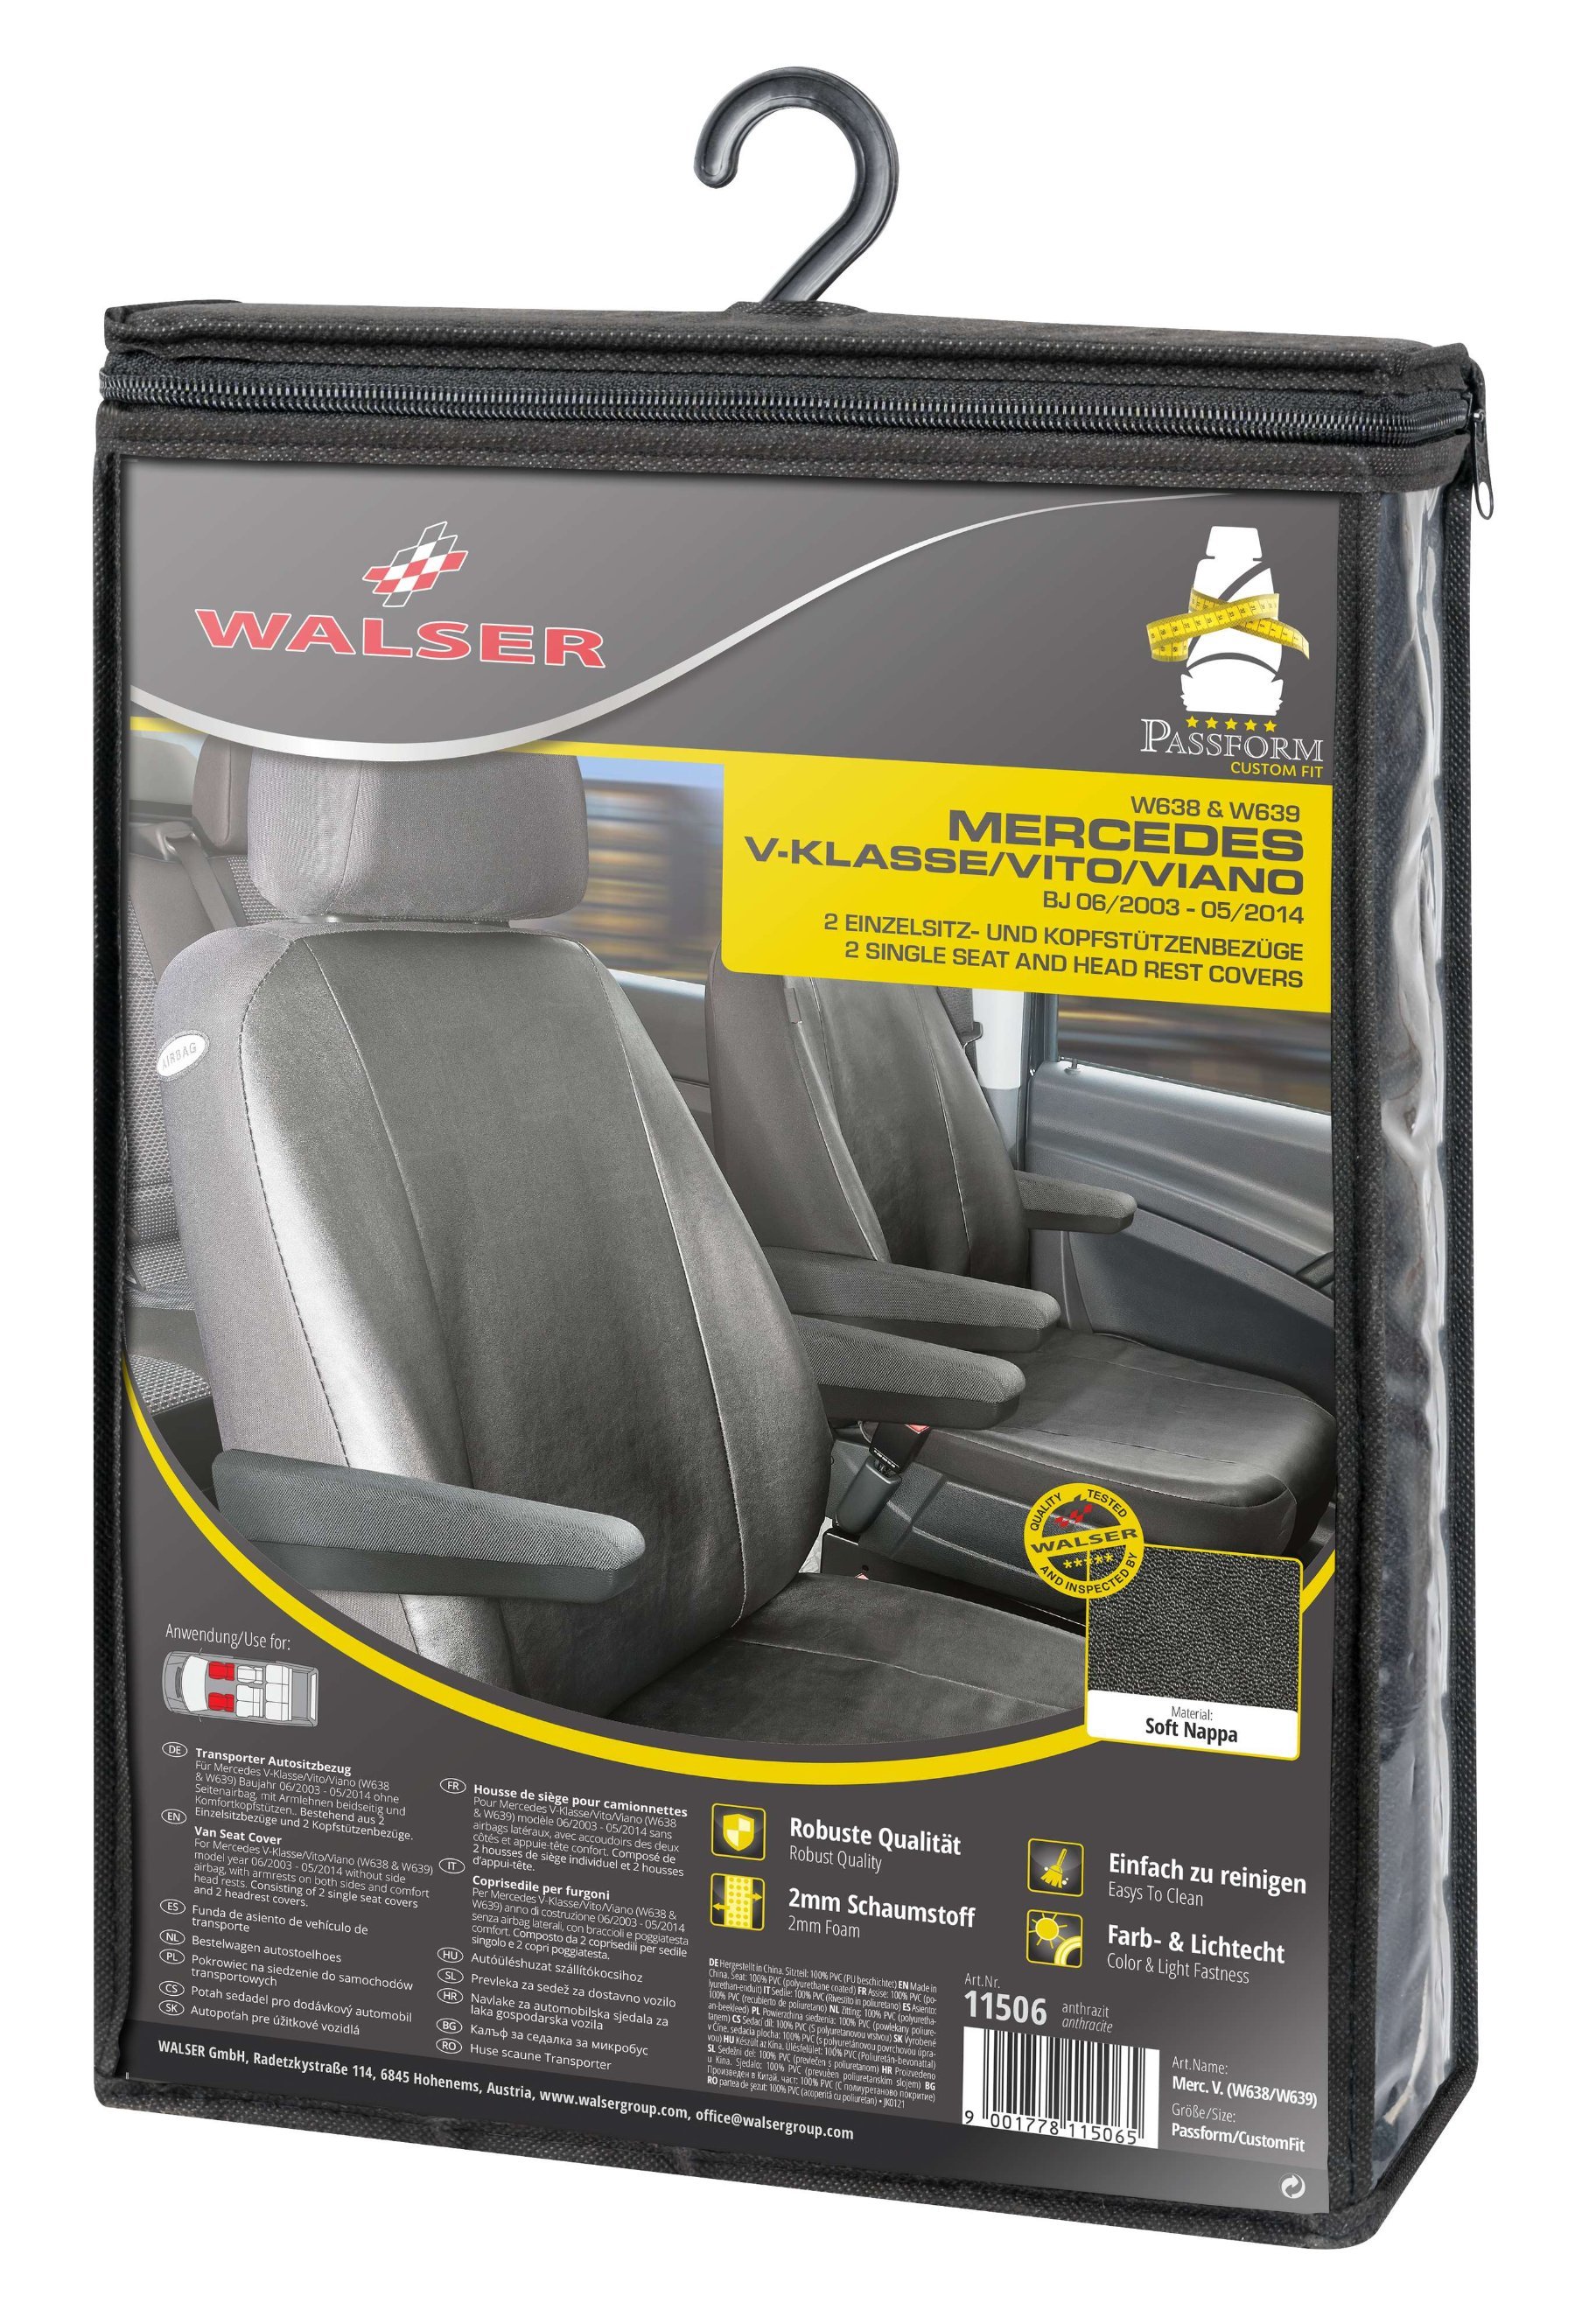 Passform Sitzbezug aus Kunstleder für Mercedes-Benz Viano/Vito, 2 Einzelsitzbezüge mit Armlehne innen & außen